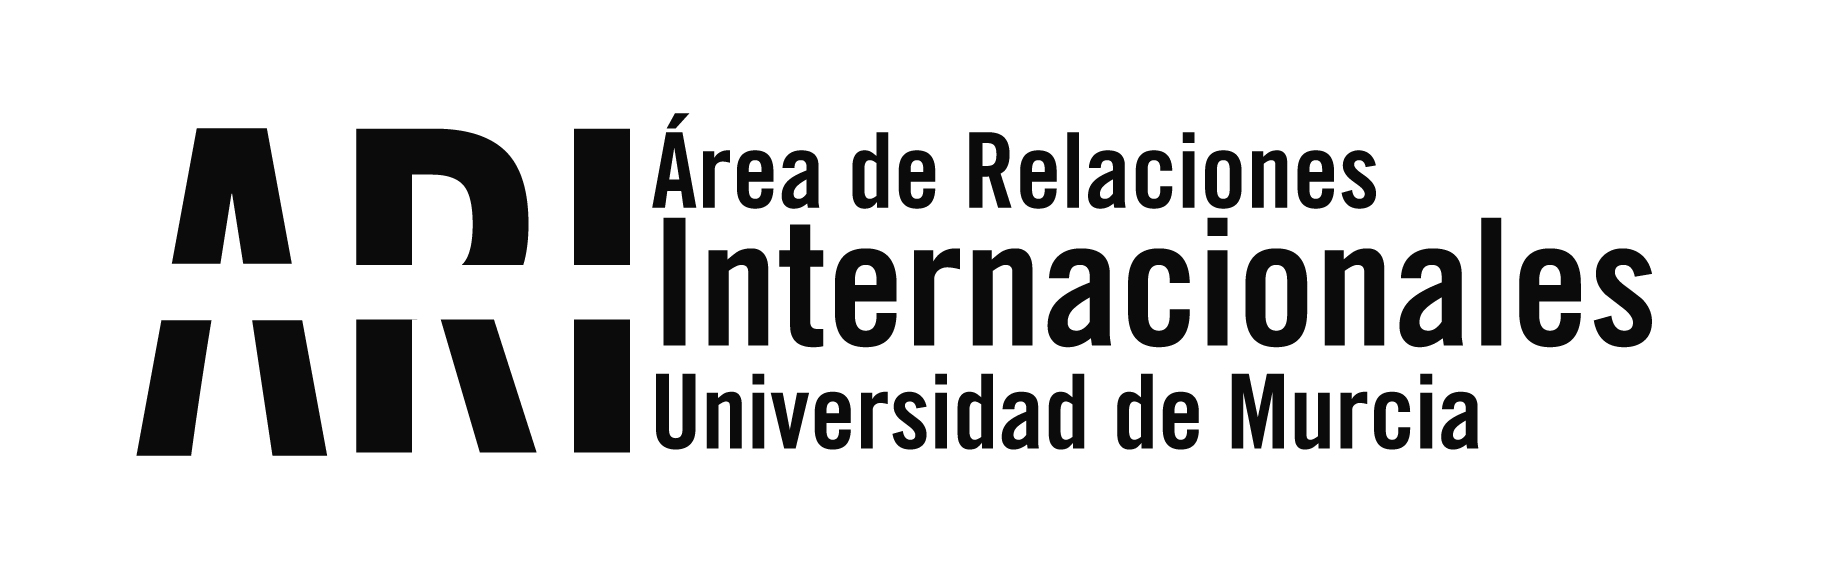 Abierta la convocatoria del Programa ILA de Intercambio con Latinoamérica 2020/21 - Área de Relaciones Internacionales